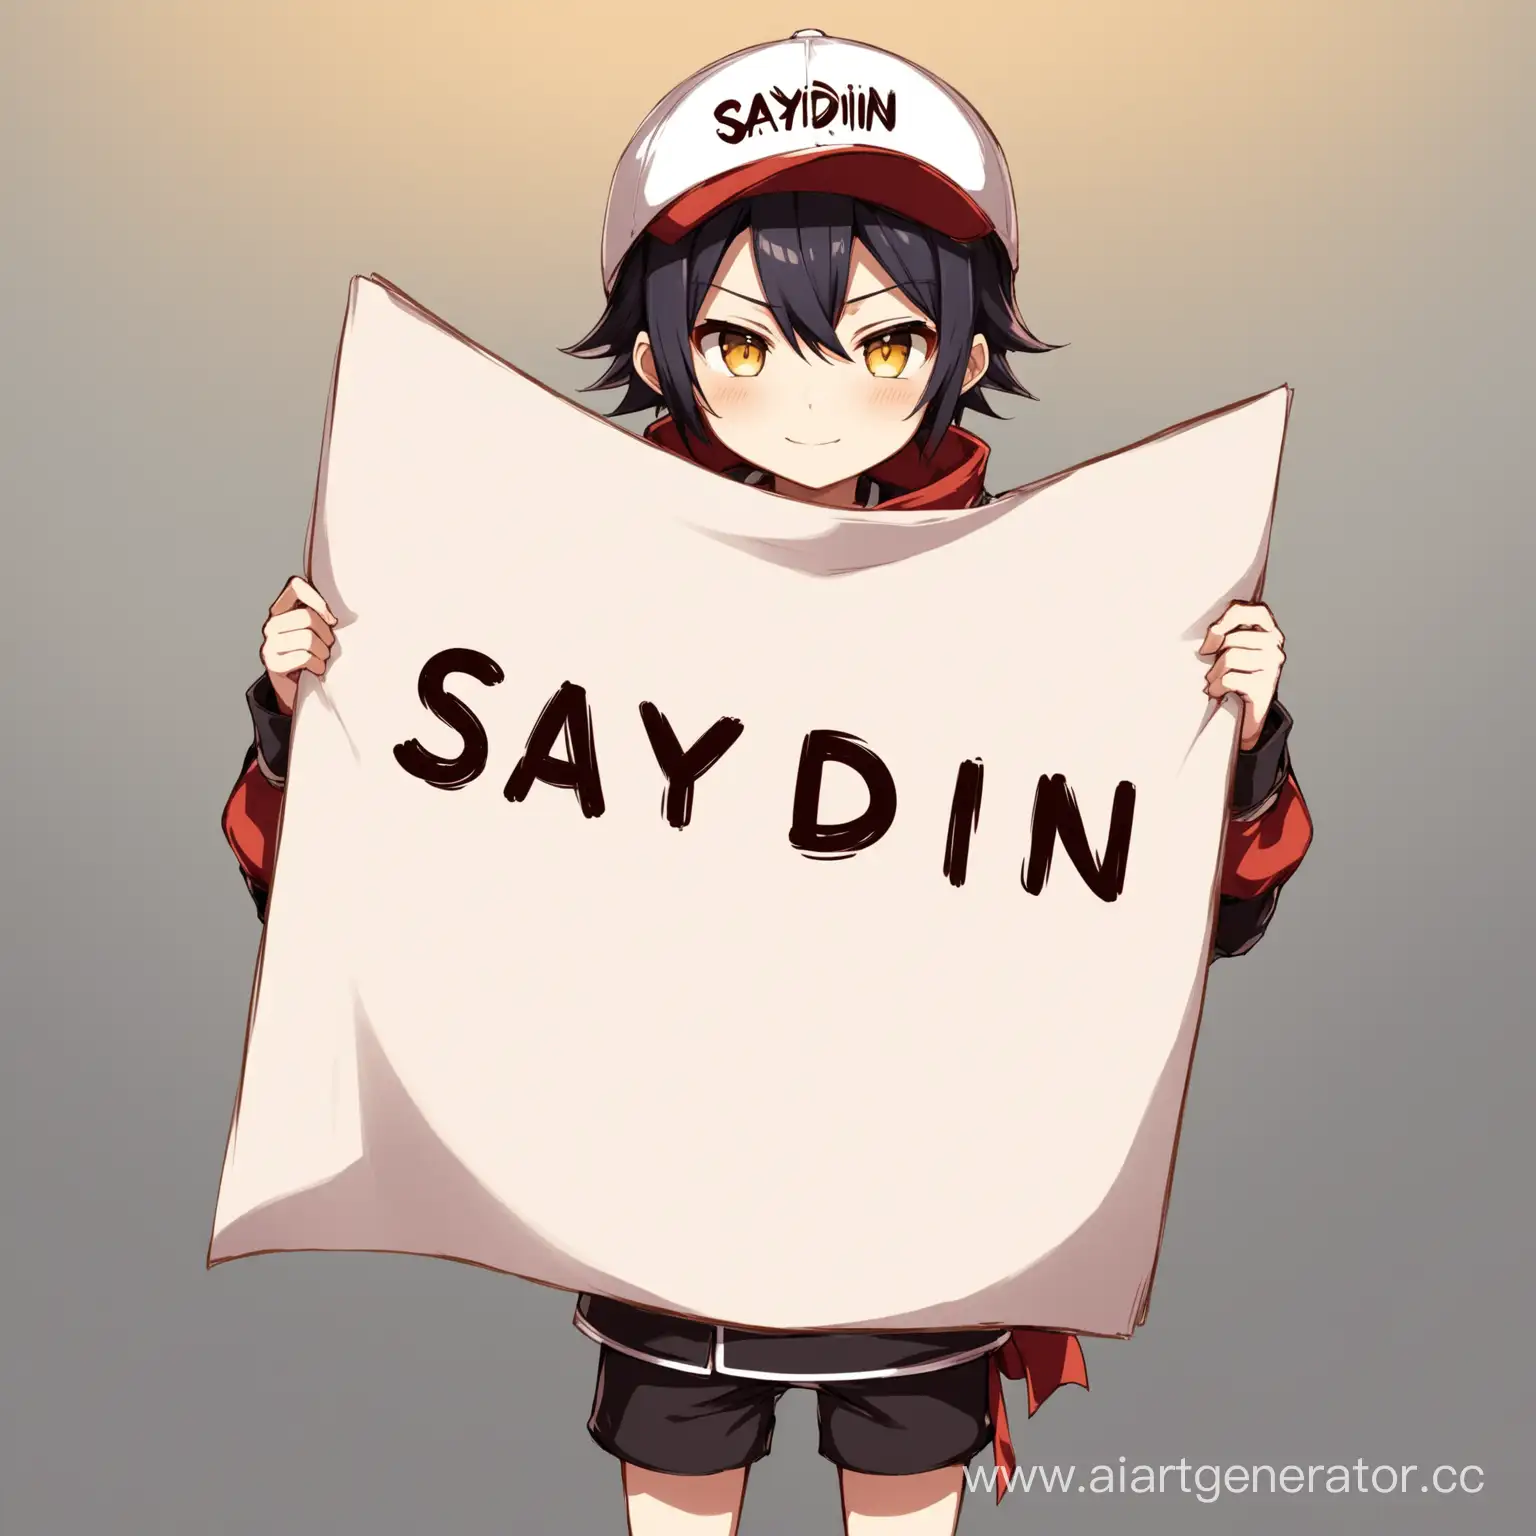 Игровая аватарка где аниме персонаж держит лист с надписью Saydin